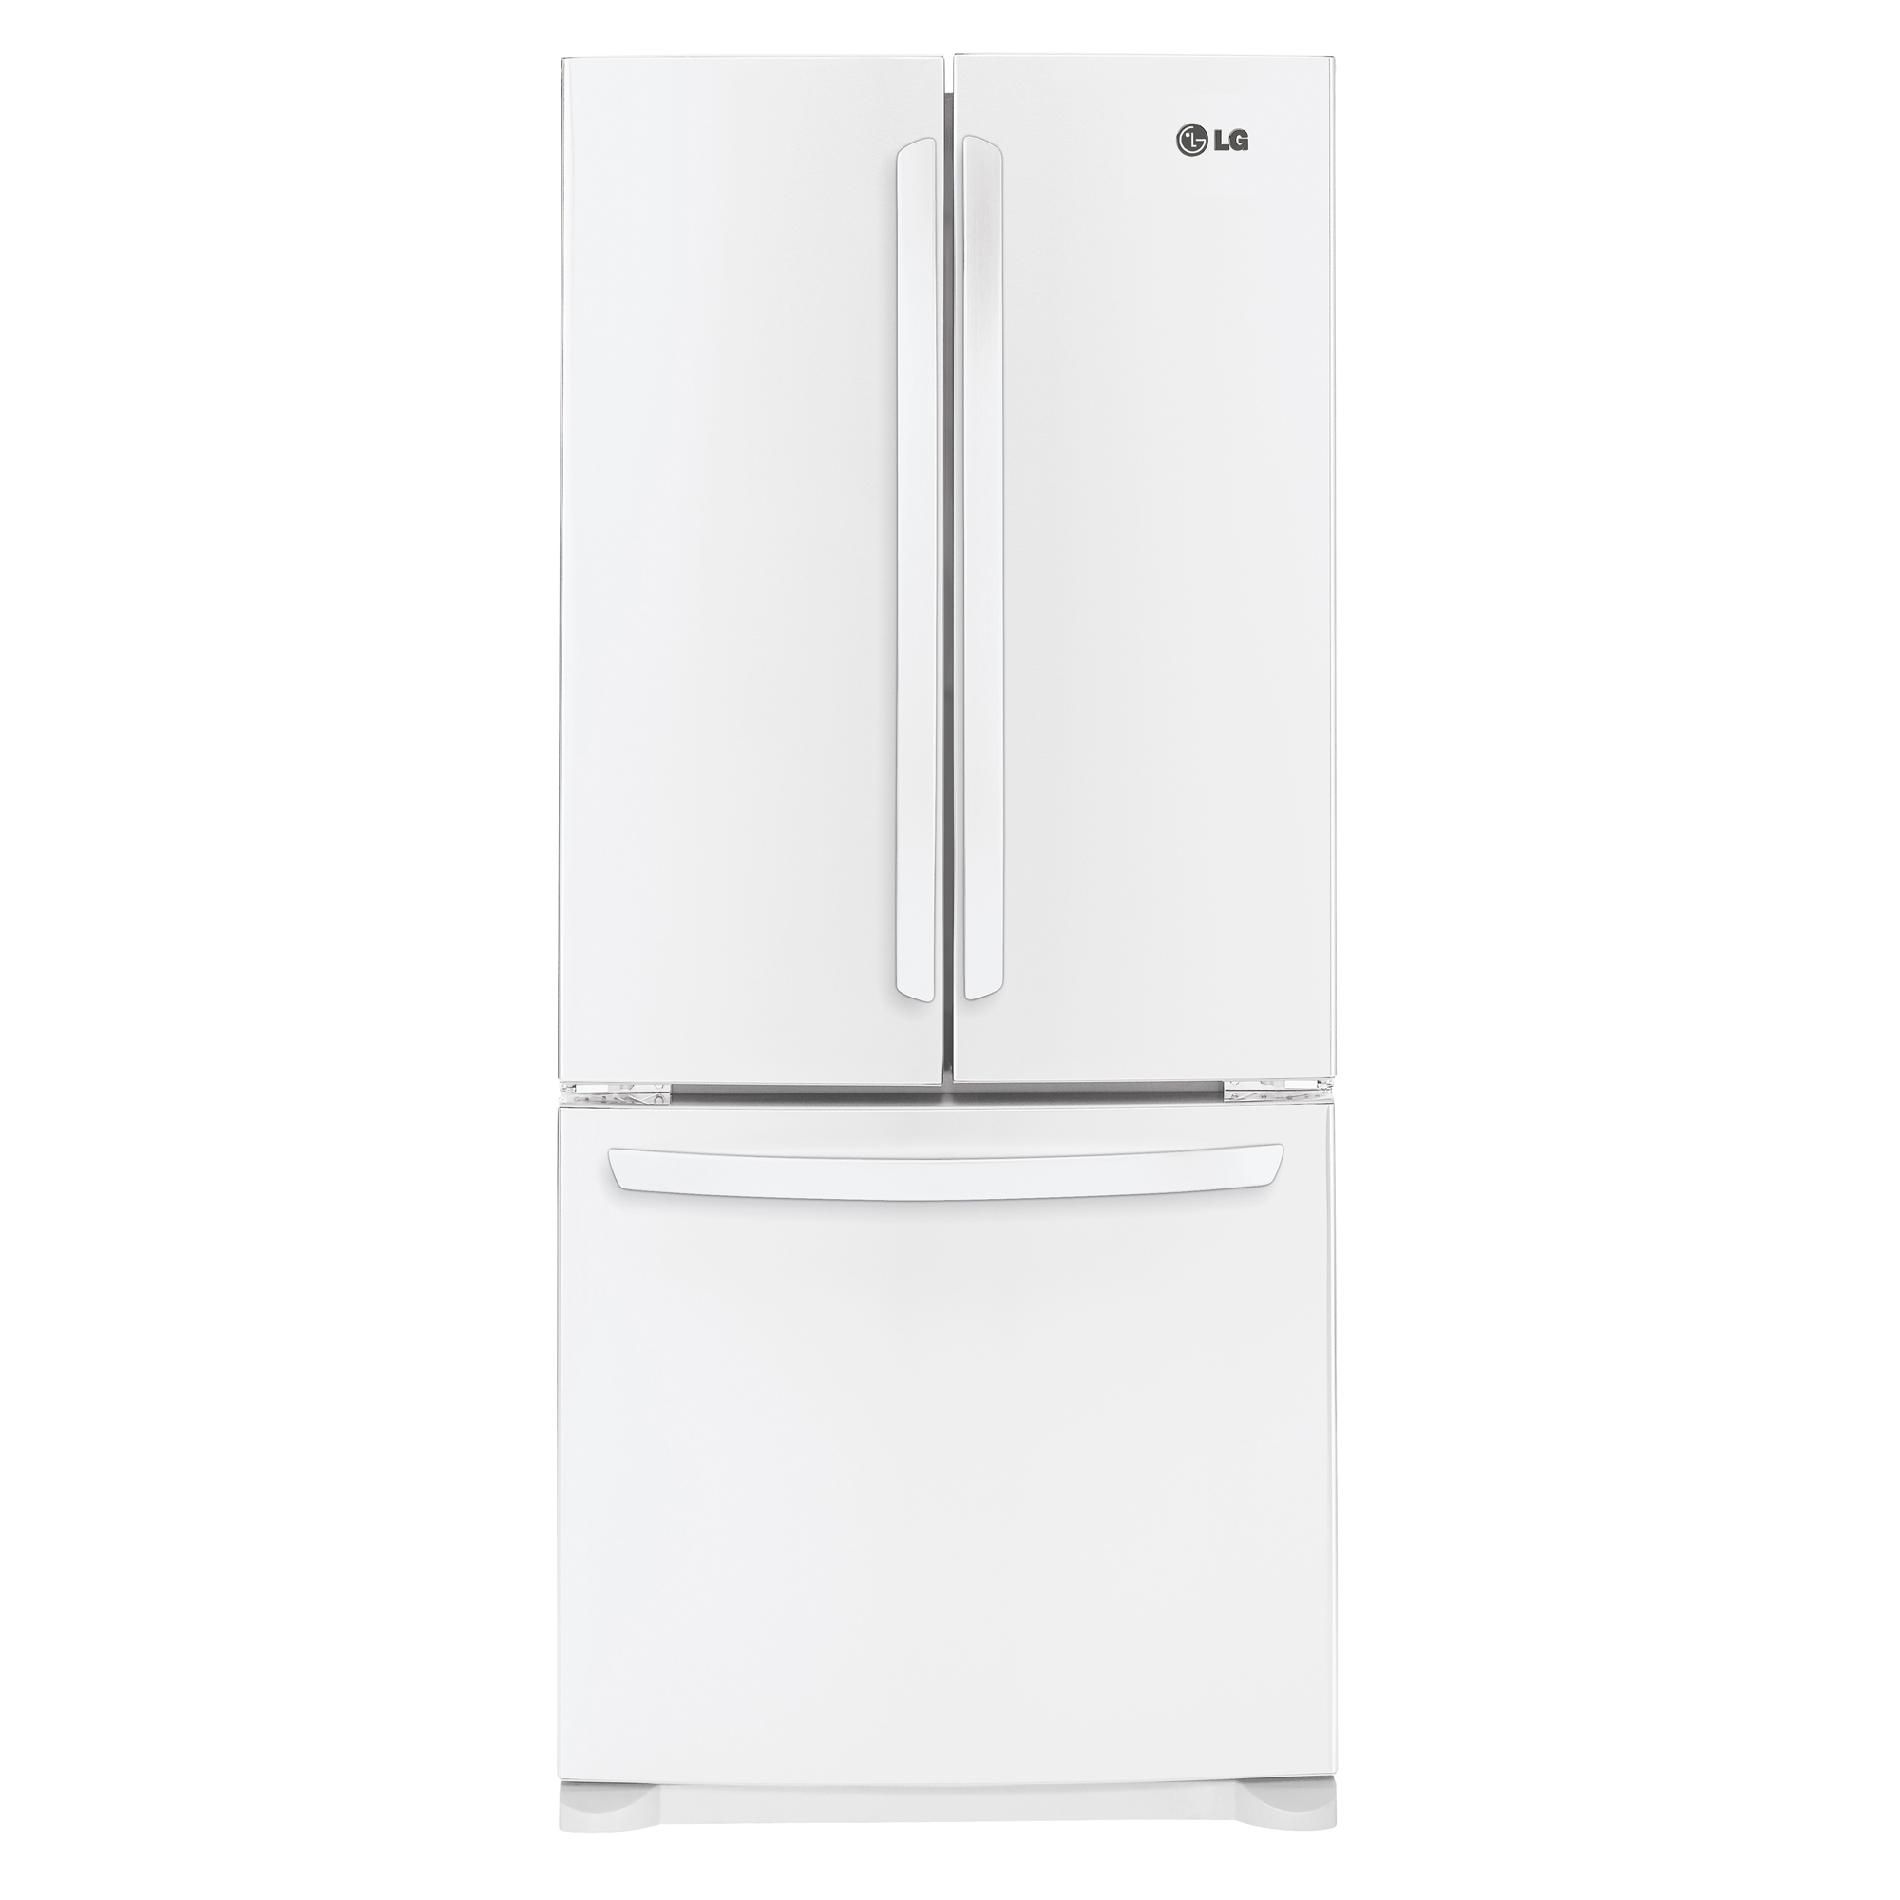 LG 19.7 cu. ft. French-Door Bottom-Freezer Refrigerator, White (LFC20770SW)